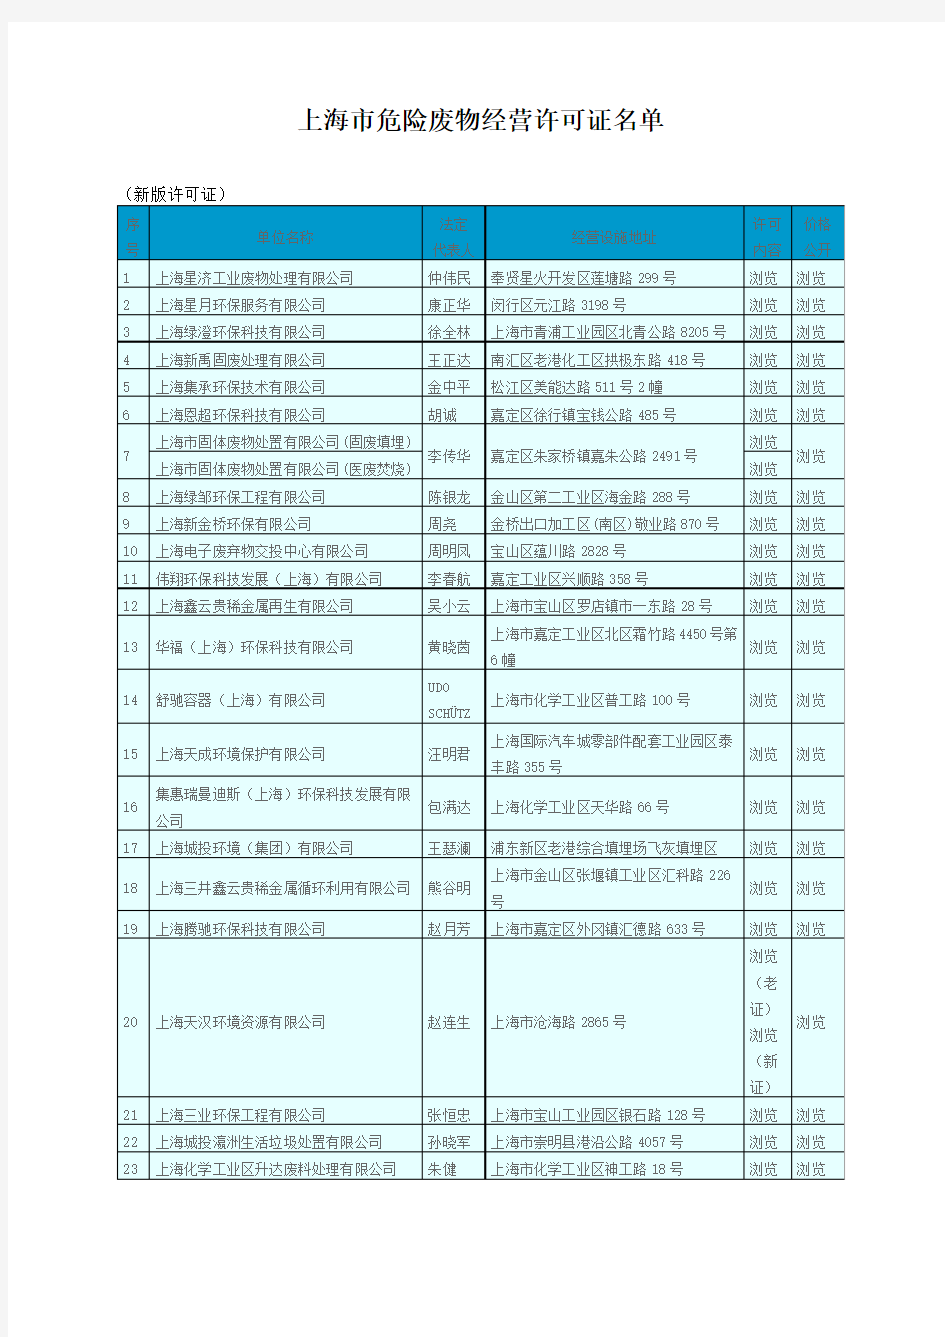 上海市危险废物经营许可证名单